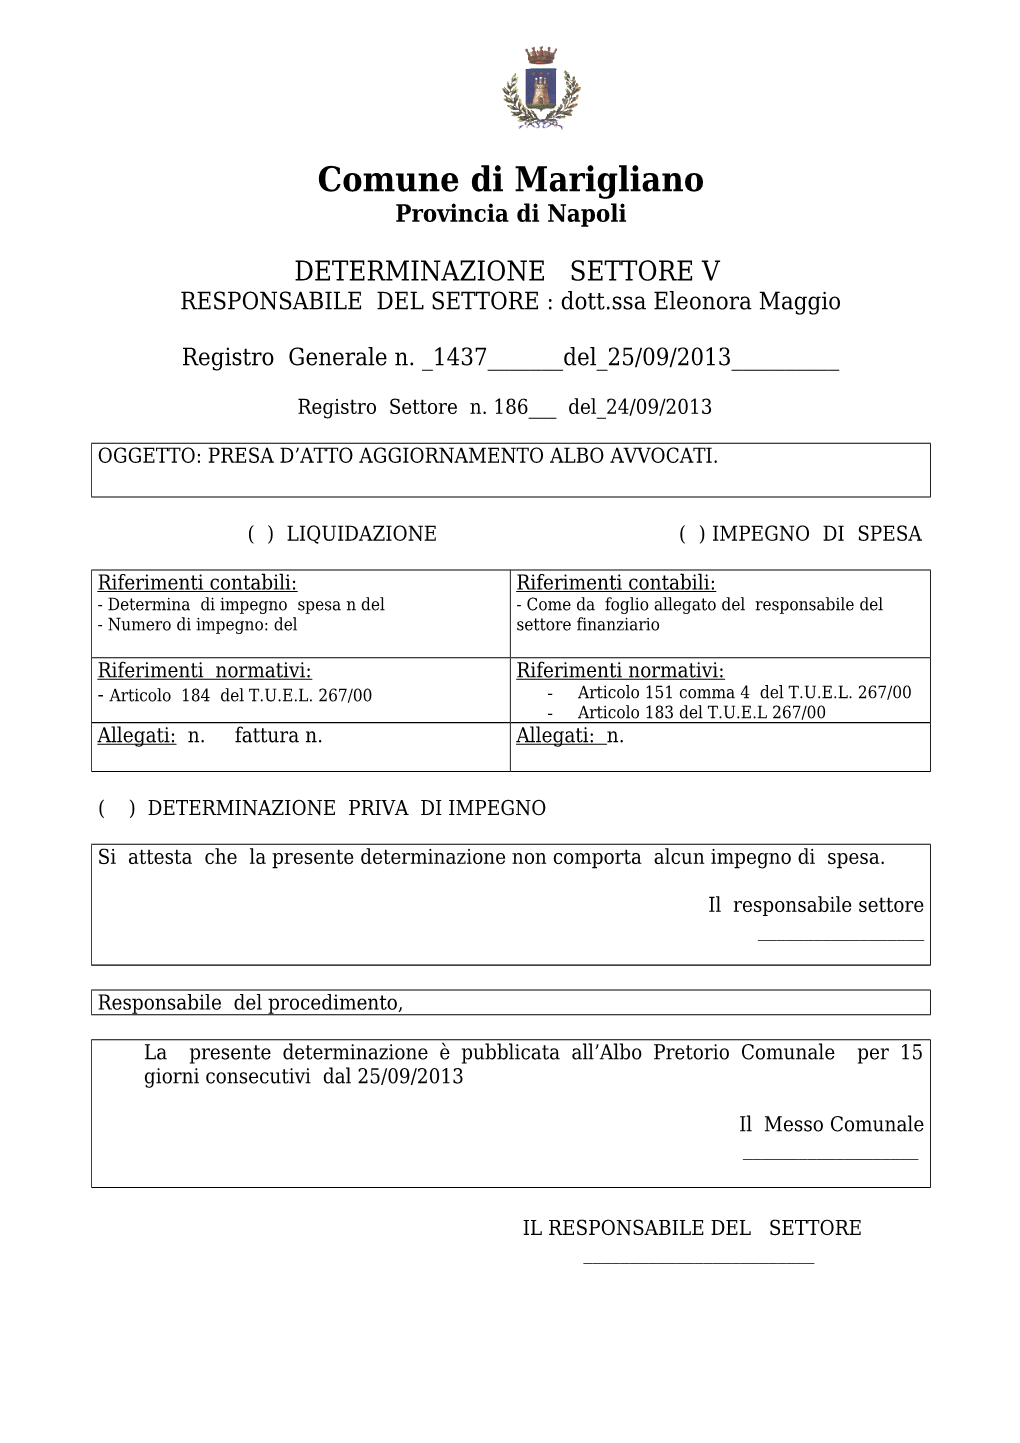 DETERMINAZIONE SETTORE V RESPONSABILE DEL SETTORE : Dott.Ssa Eleonora Maggio